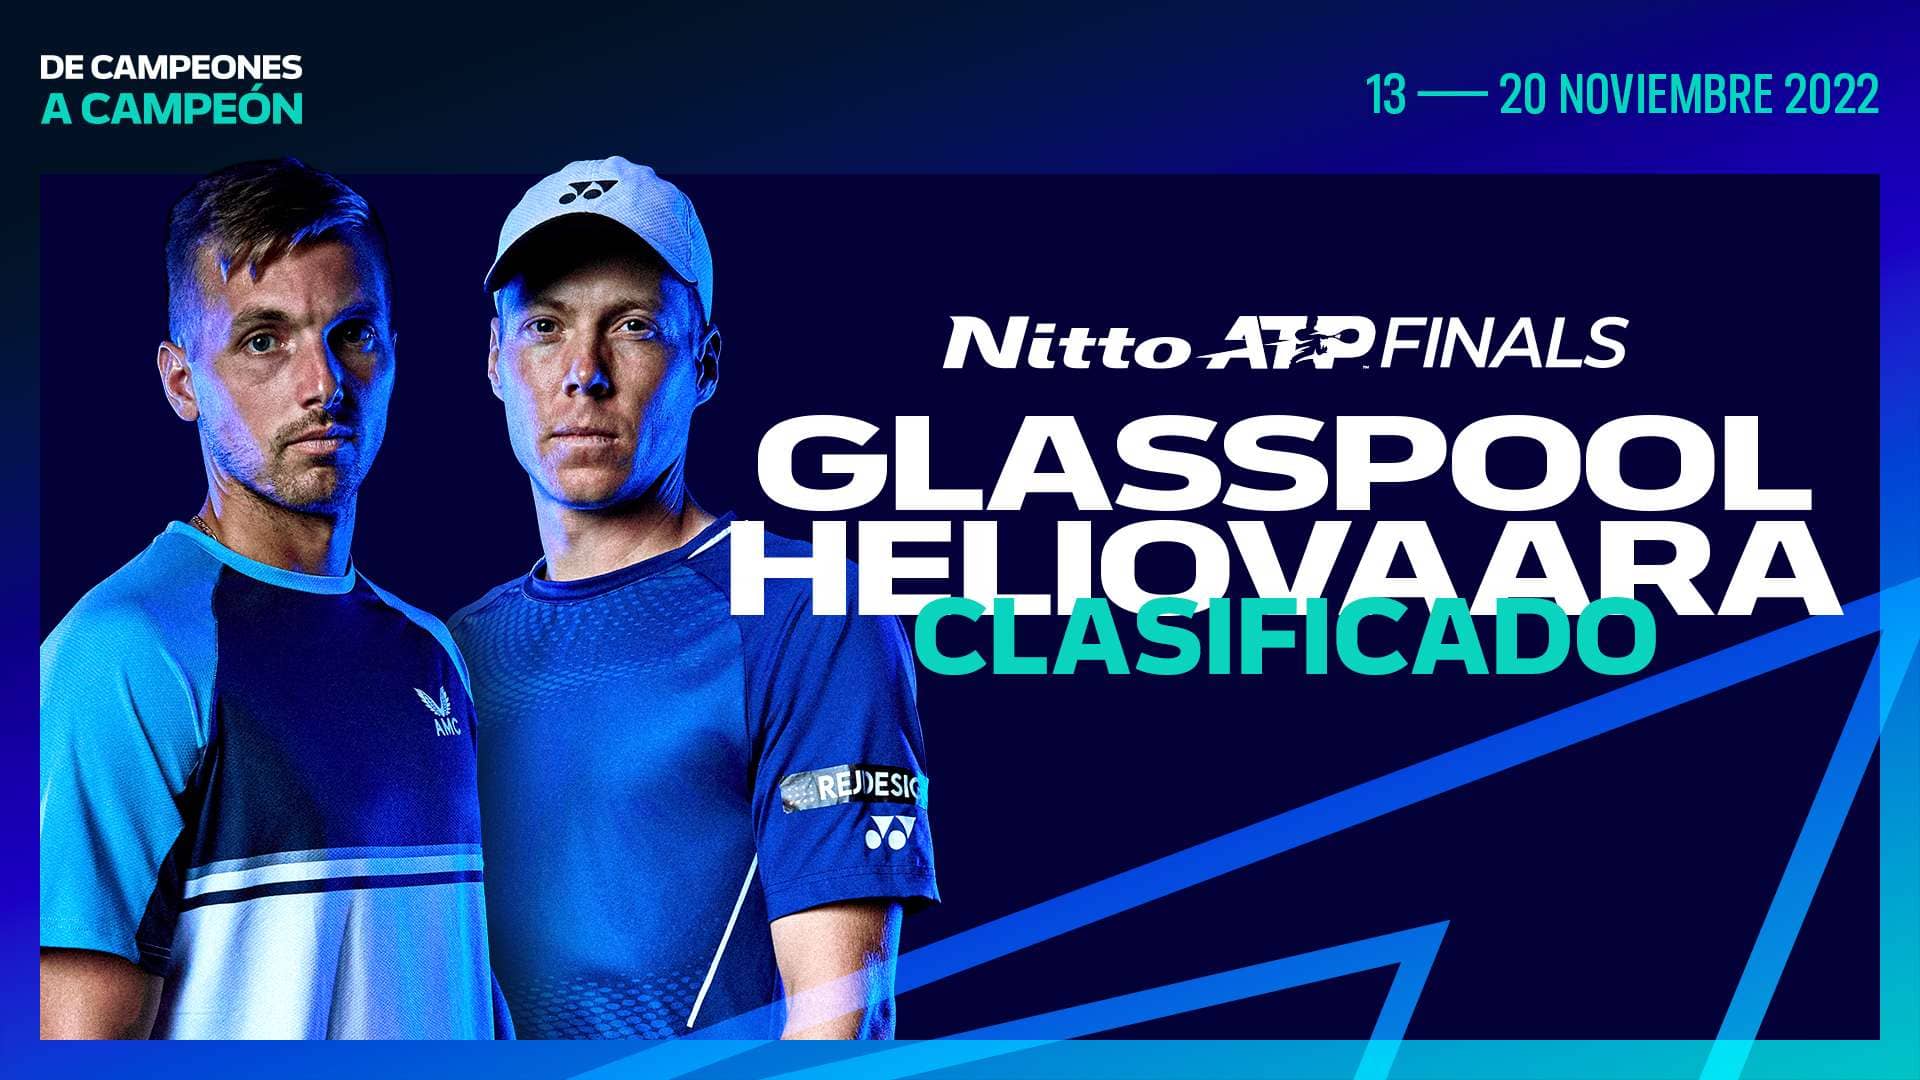 Glasspool/Heliovaara Harán Su Debut En Las Nitto ATP Finals News